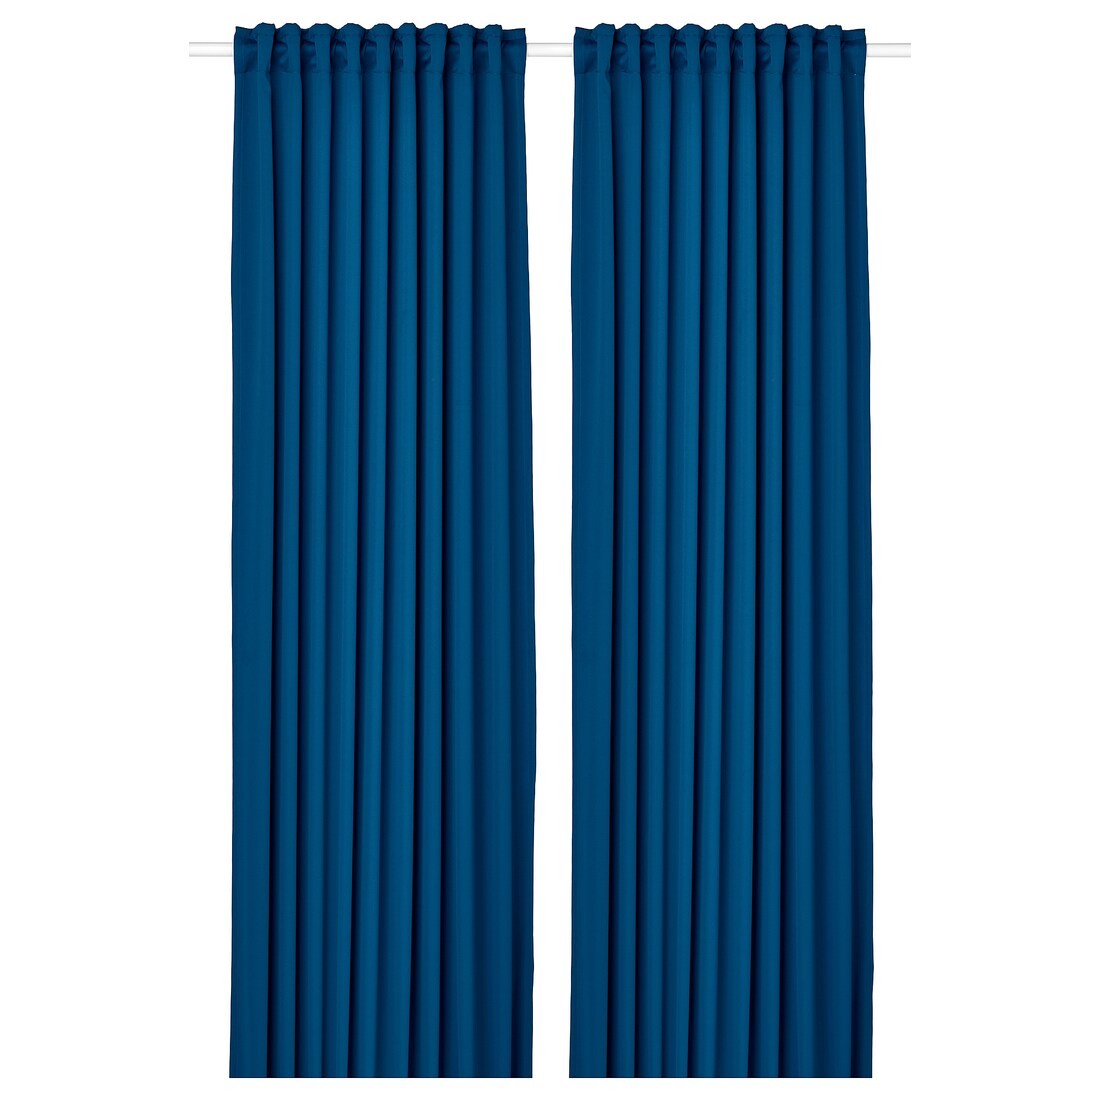 MAJGULL Світлонепроникні штори, пара, темно-синій, 145x300 см